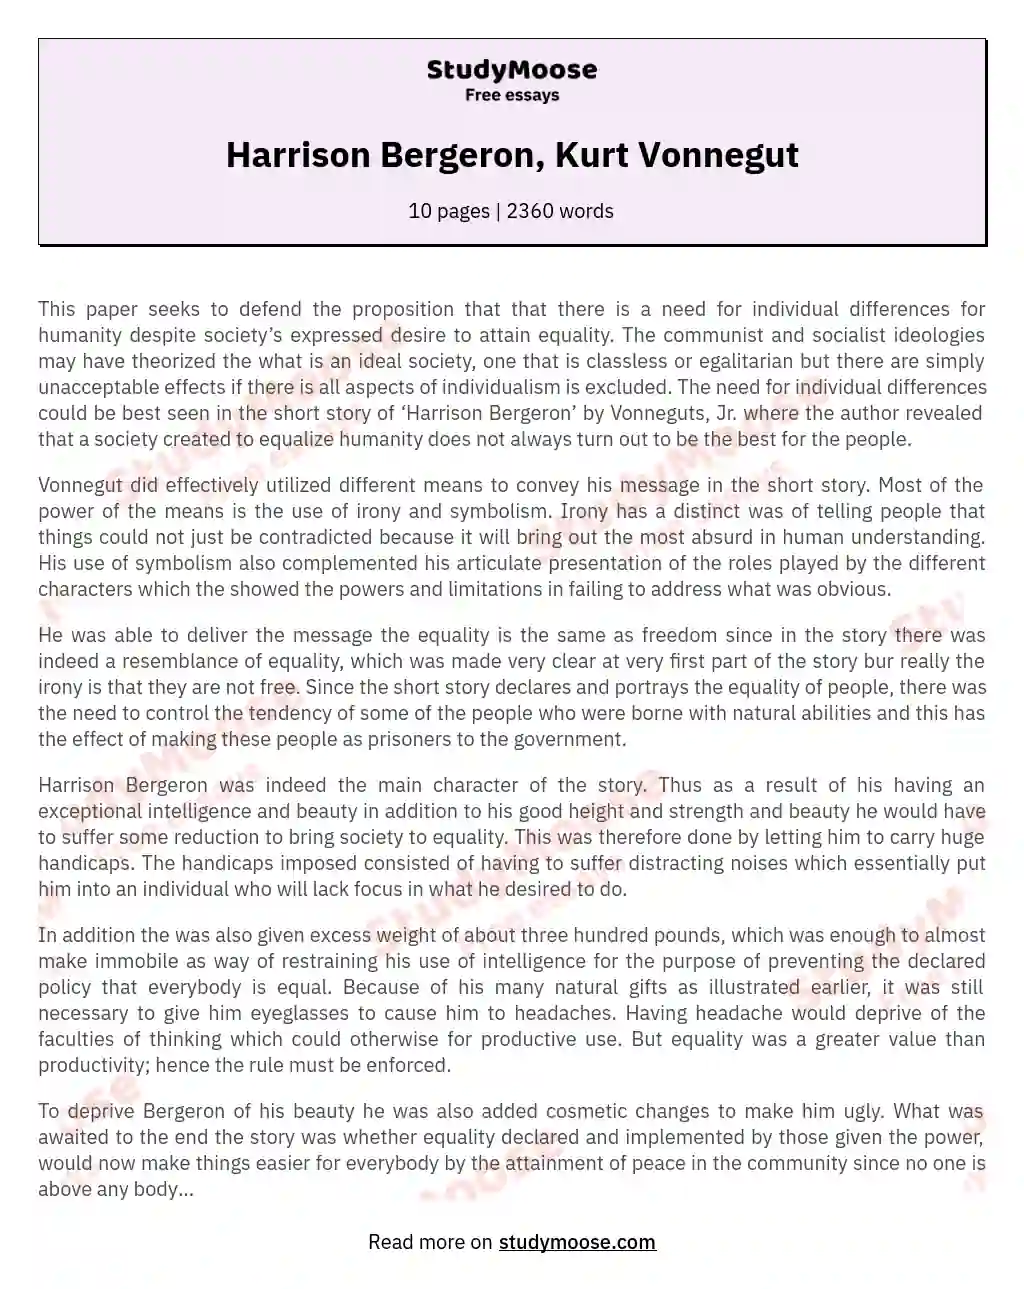 Harrison Bergeron, Kurt Vonnegut